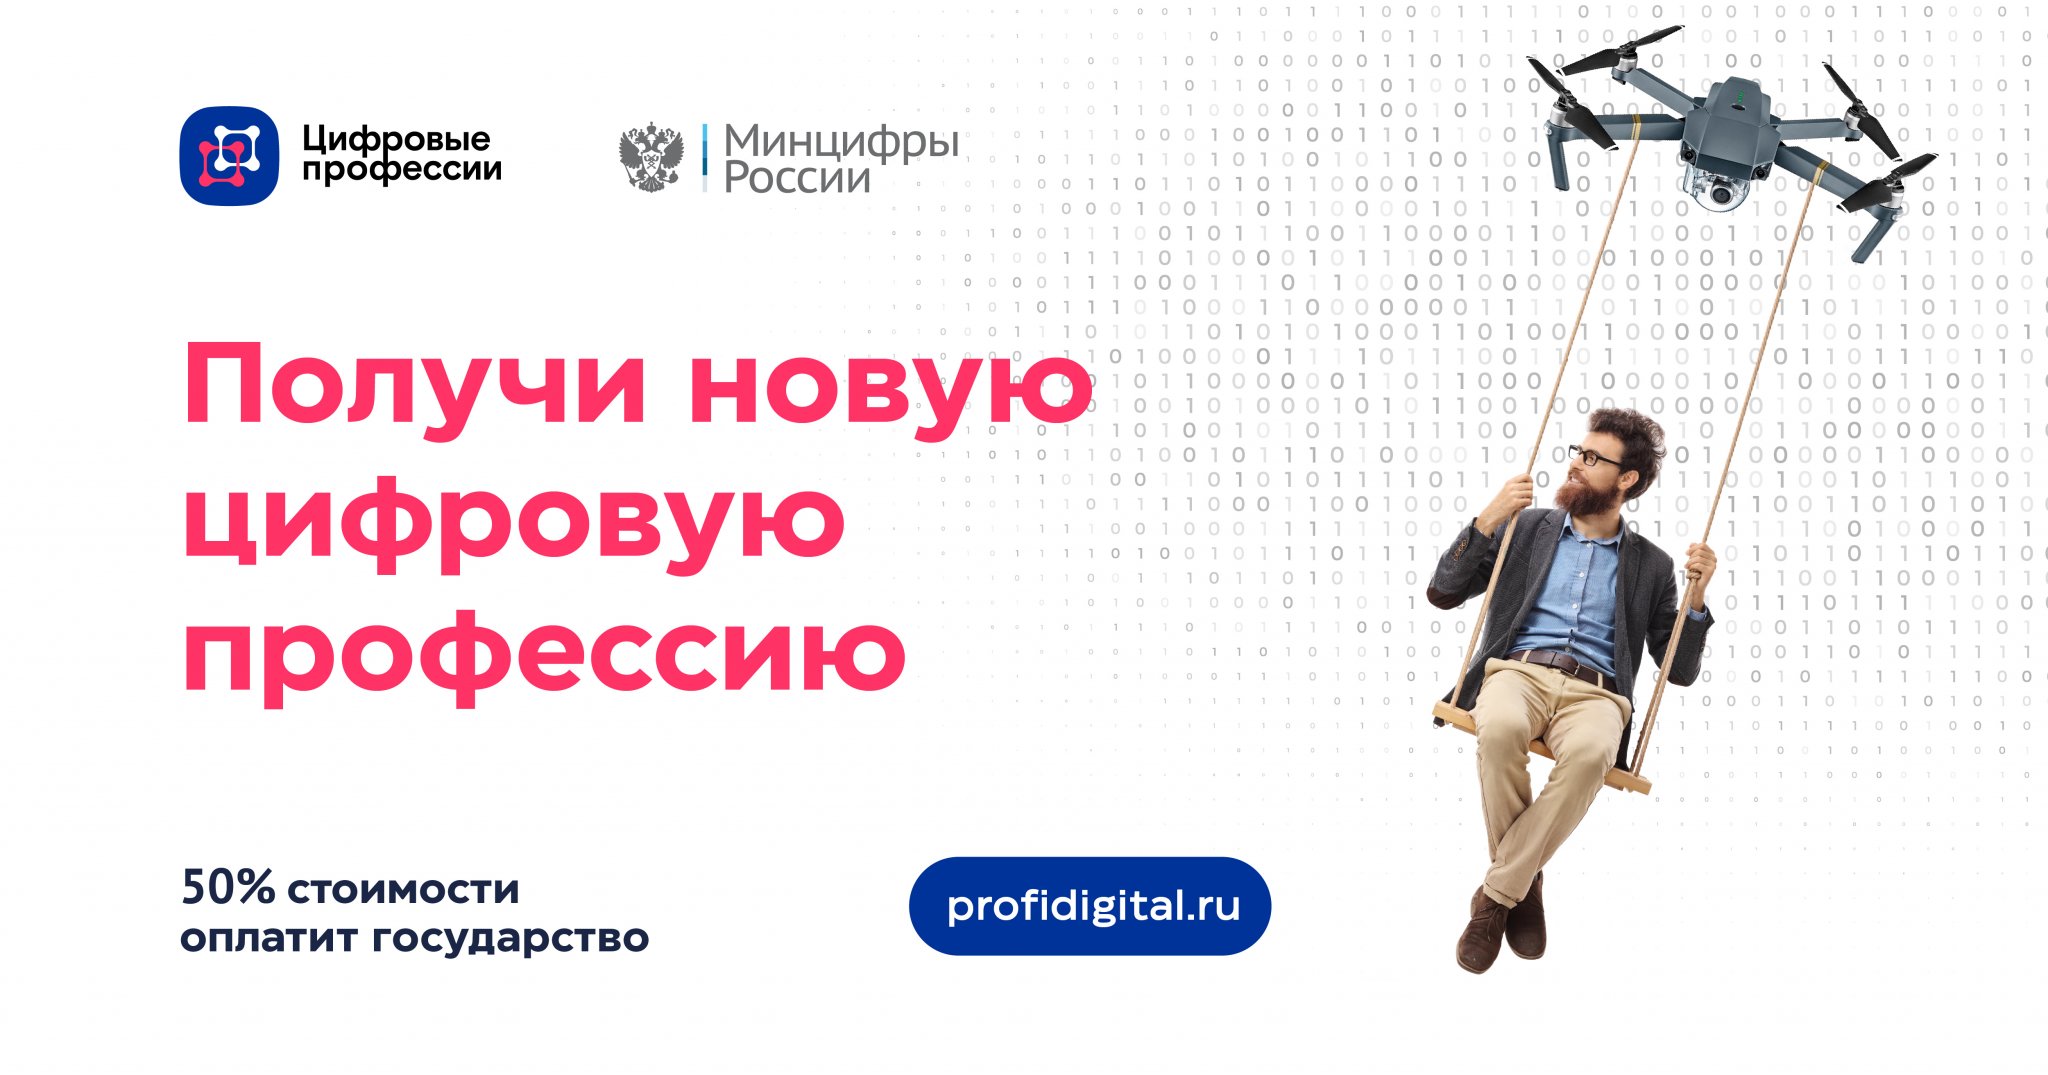 Для жителей Якутии открыта запись на обучение ИТ-профессиям при финансовой поддержке государства